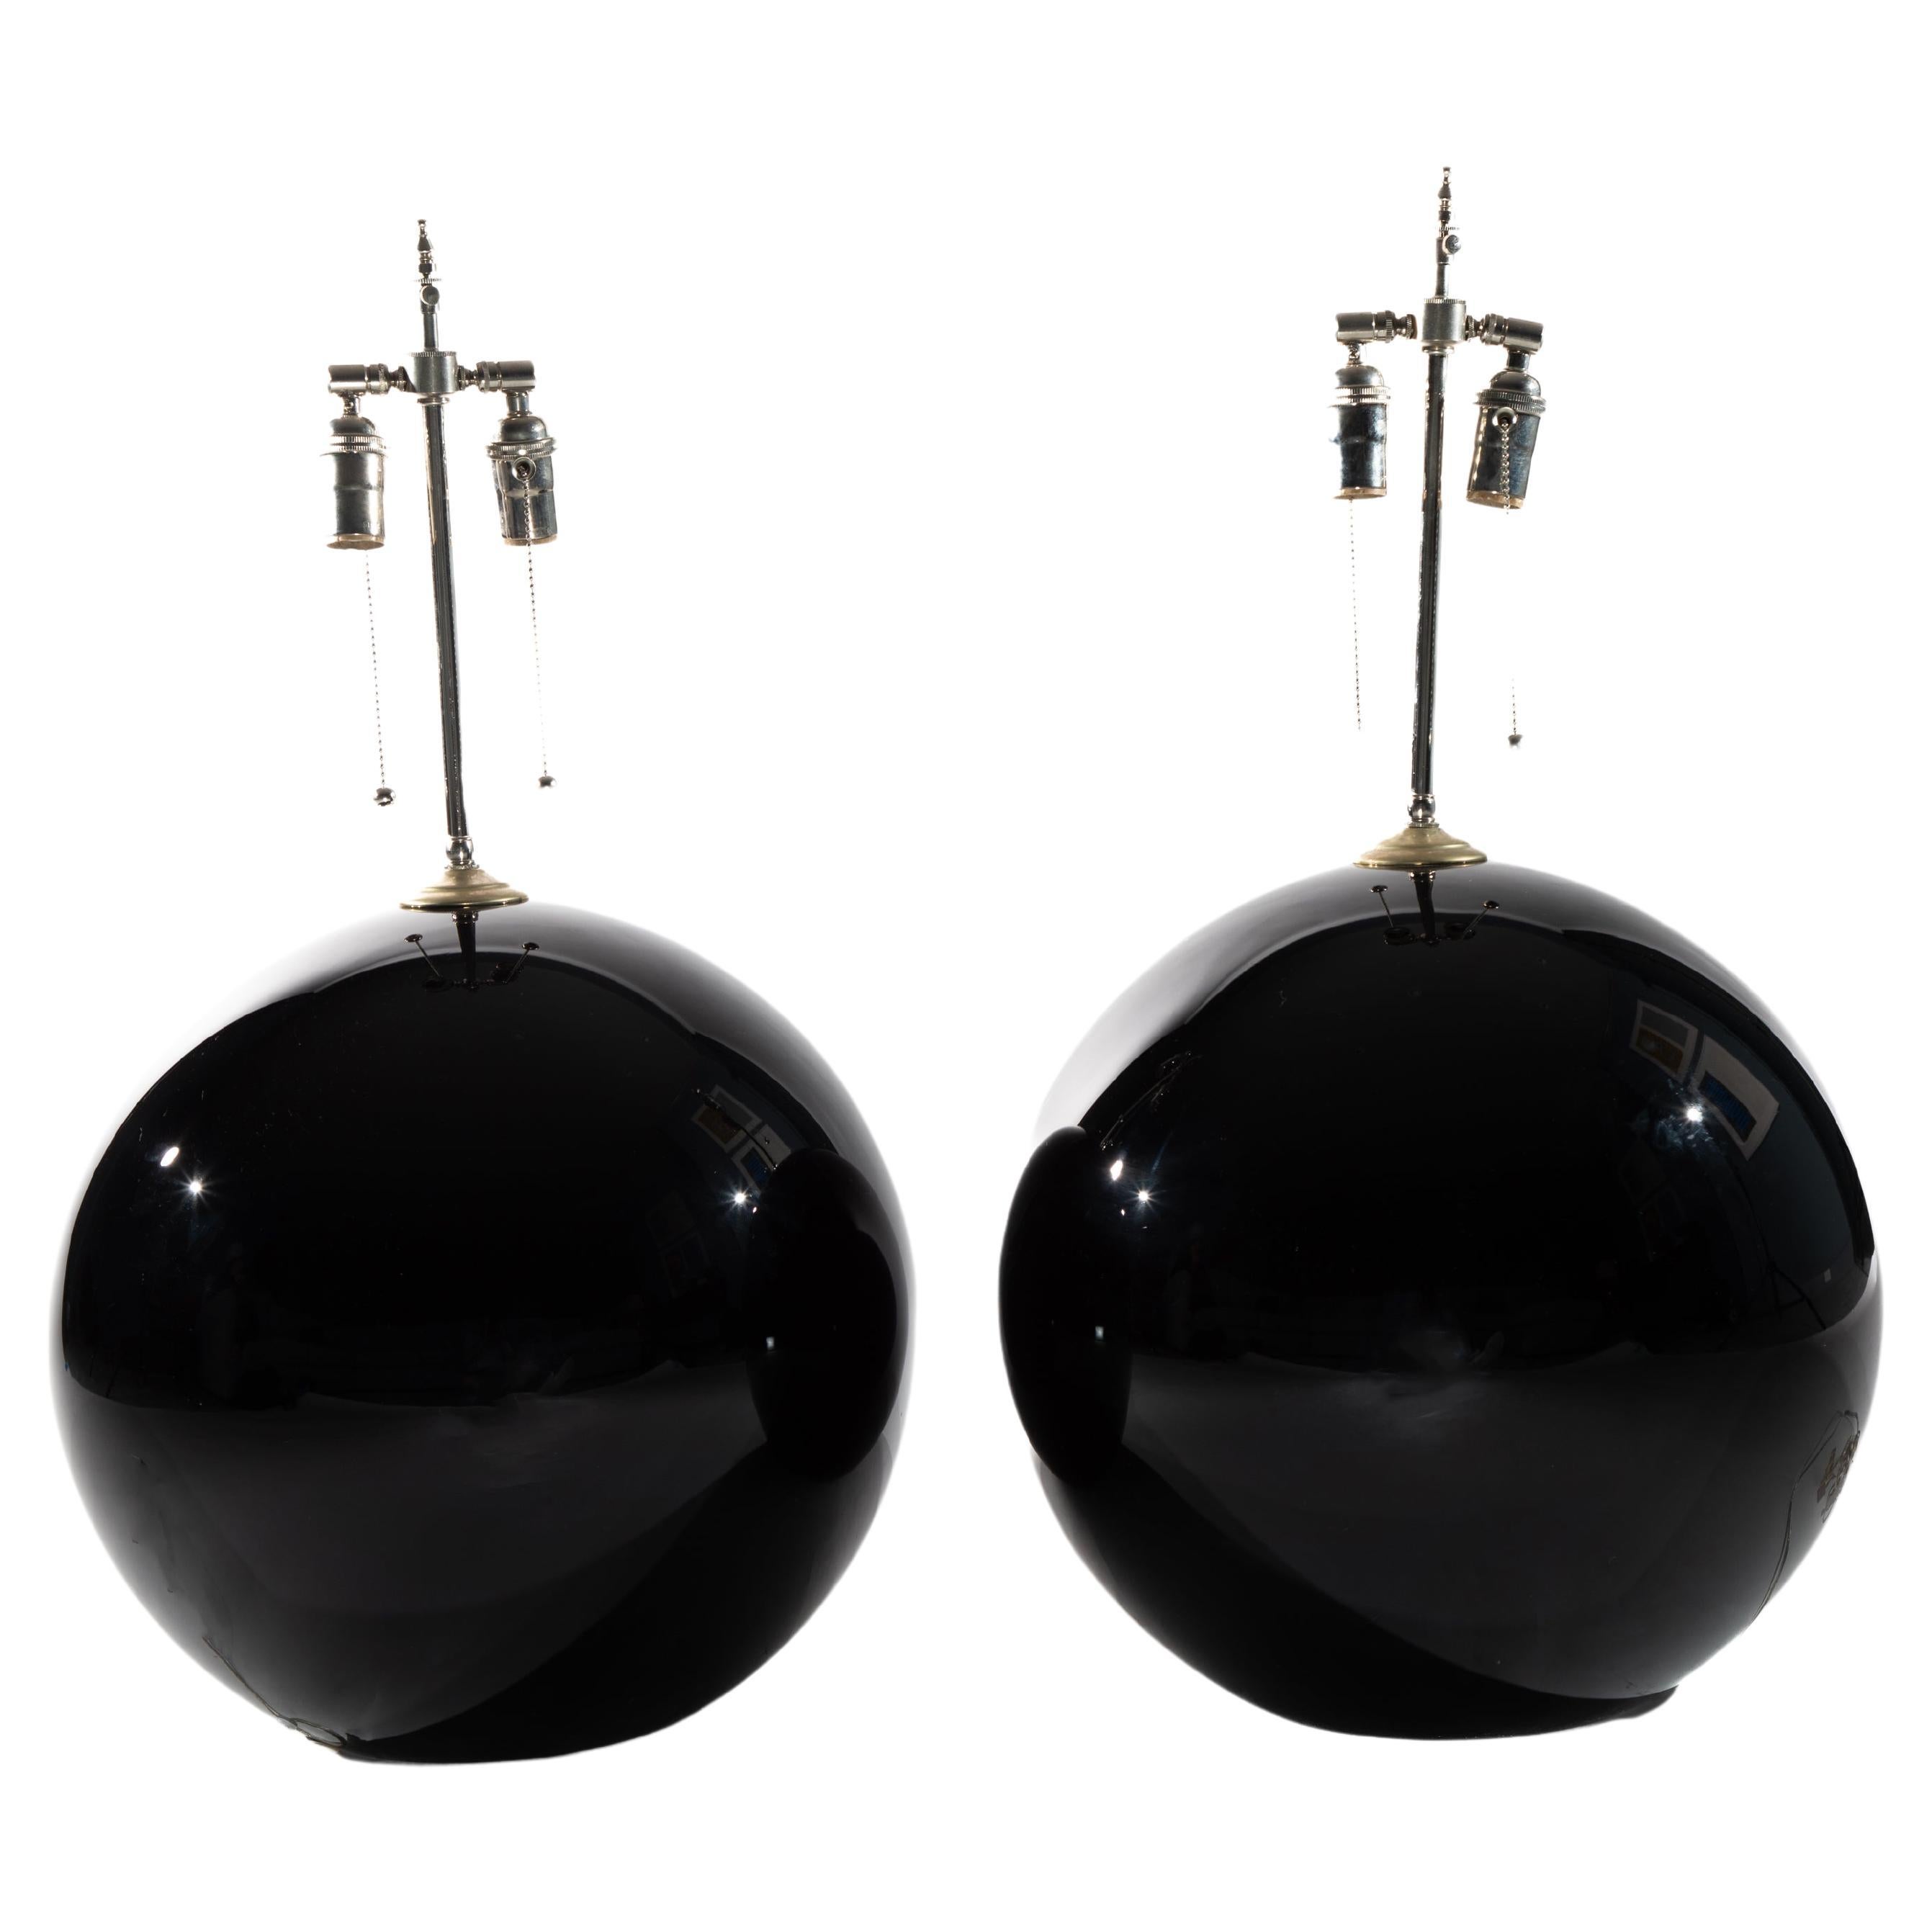 Pair of Monumental Globe Lamps, Manner of Karl Springer